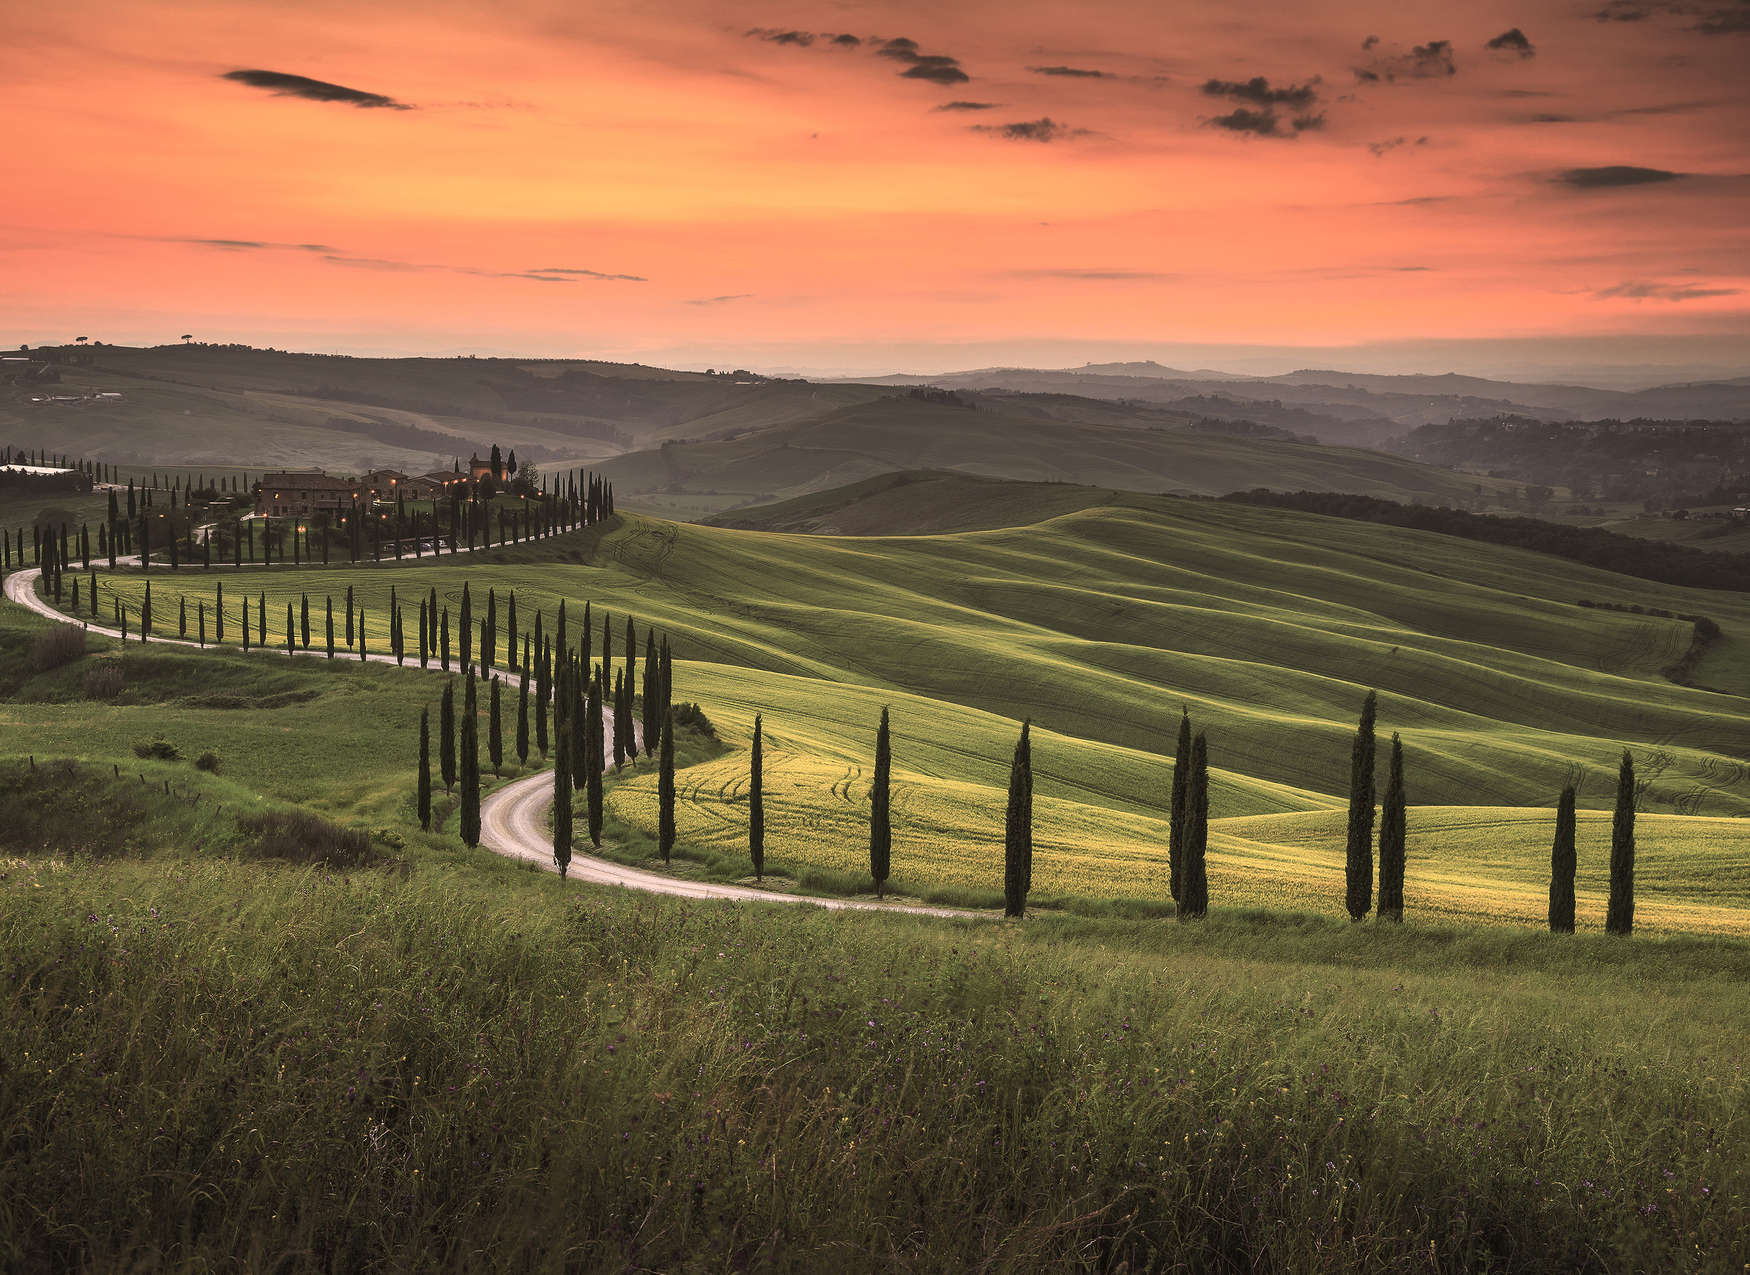             Tuscan landscape at dusk - green, orange
        